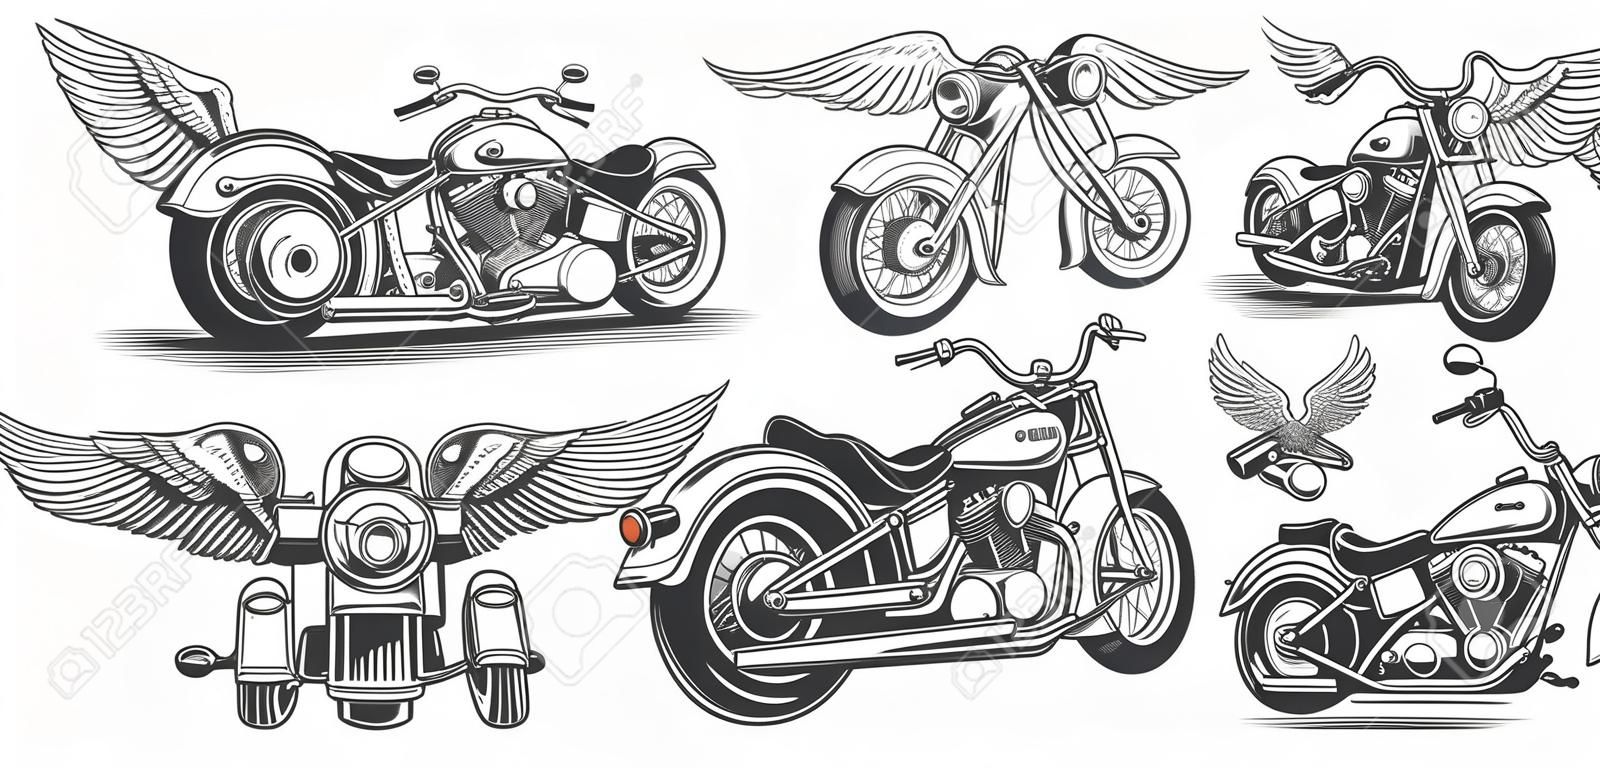 Set di illustrazioni, icone di motocicletta d'epoca vintage in diverse angolazioni, teschi, ali in stile di incisione. Chopper classico in stile d'inchiostro. Stampa, incisione, modello, elemento di design